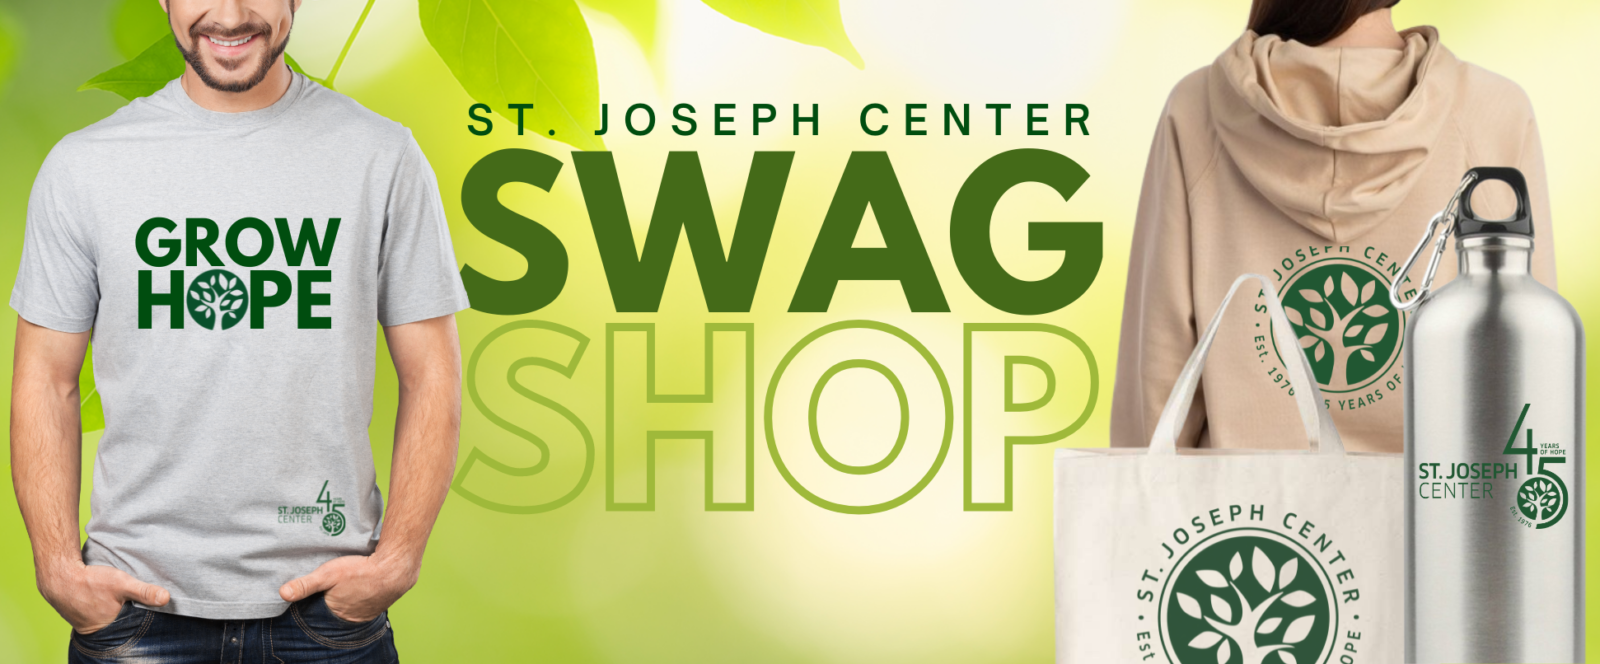 SJC Swag Shop Banner